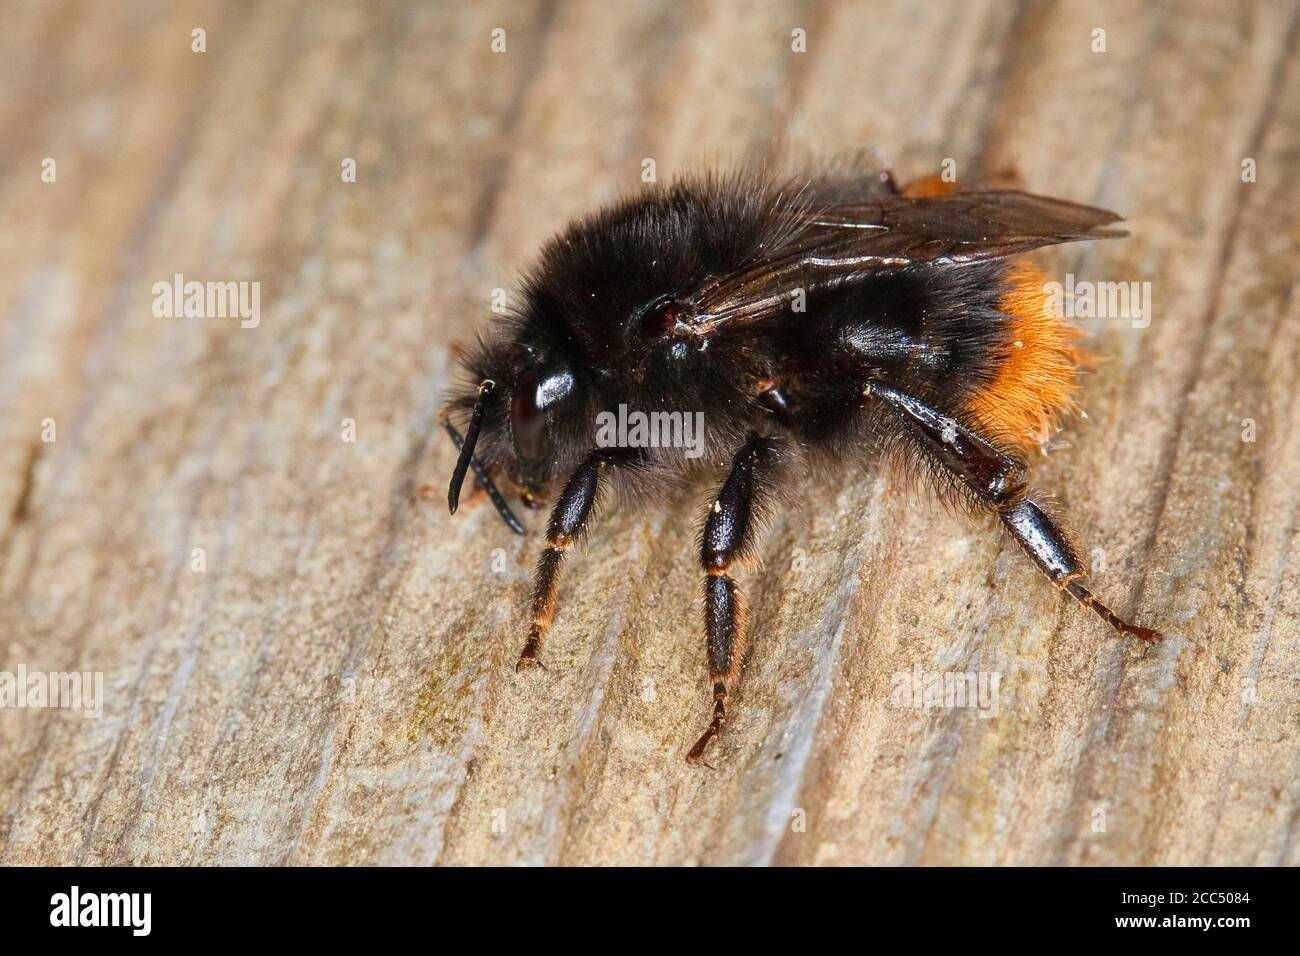 Bourdon à ceinture brisée, Ilfracombe bumblebee (Bombus cf. Soroeensis), femelle, Allemagne Banque D'Images